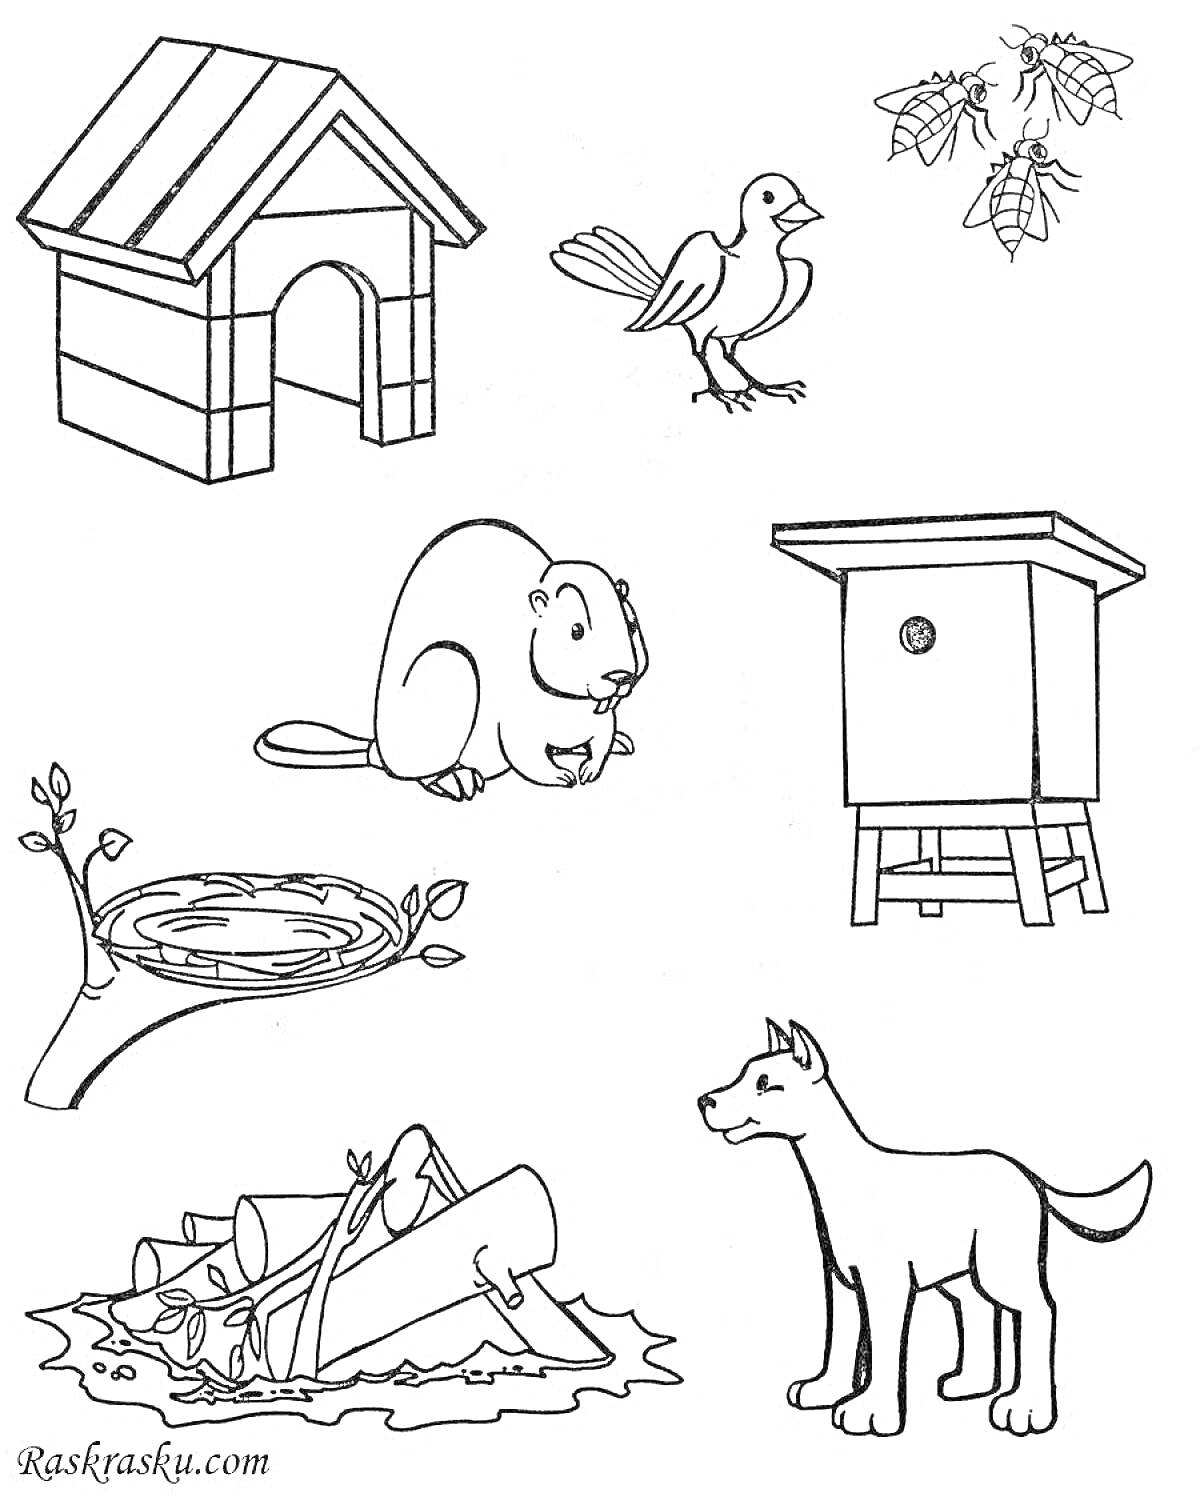 Раскраска Раскраска с домашними животными и элементами окружающей среды